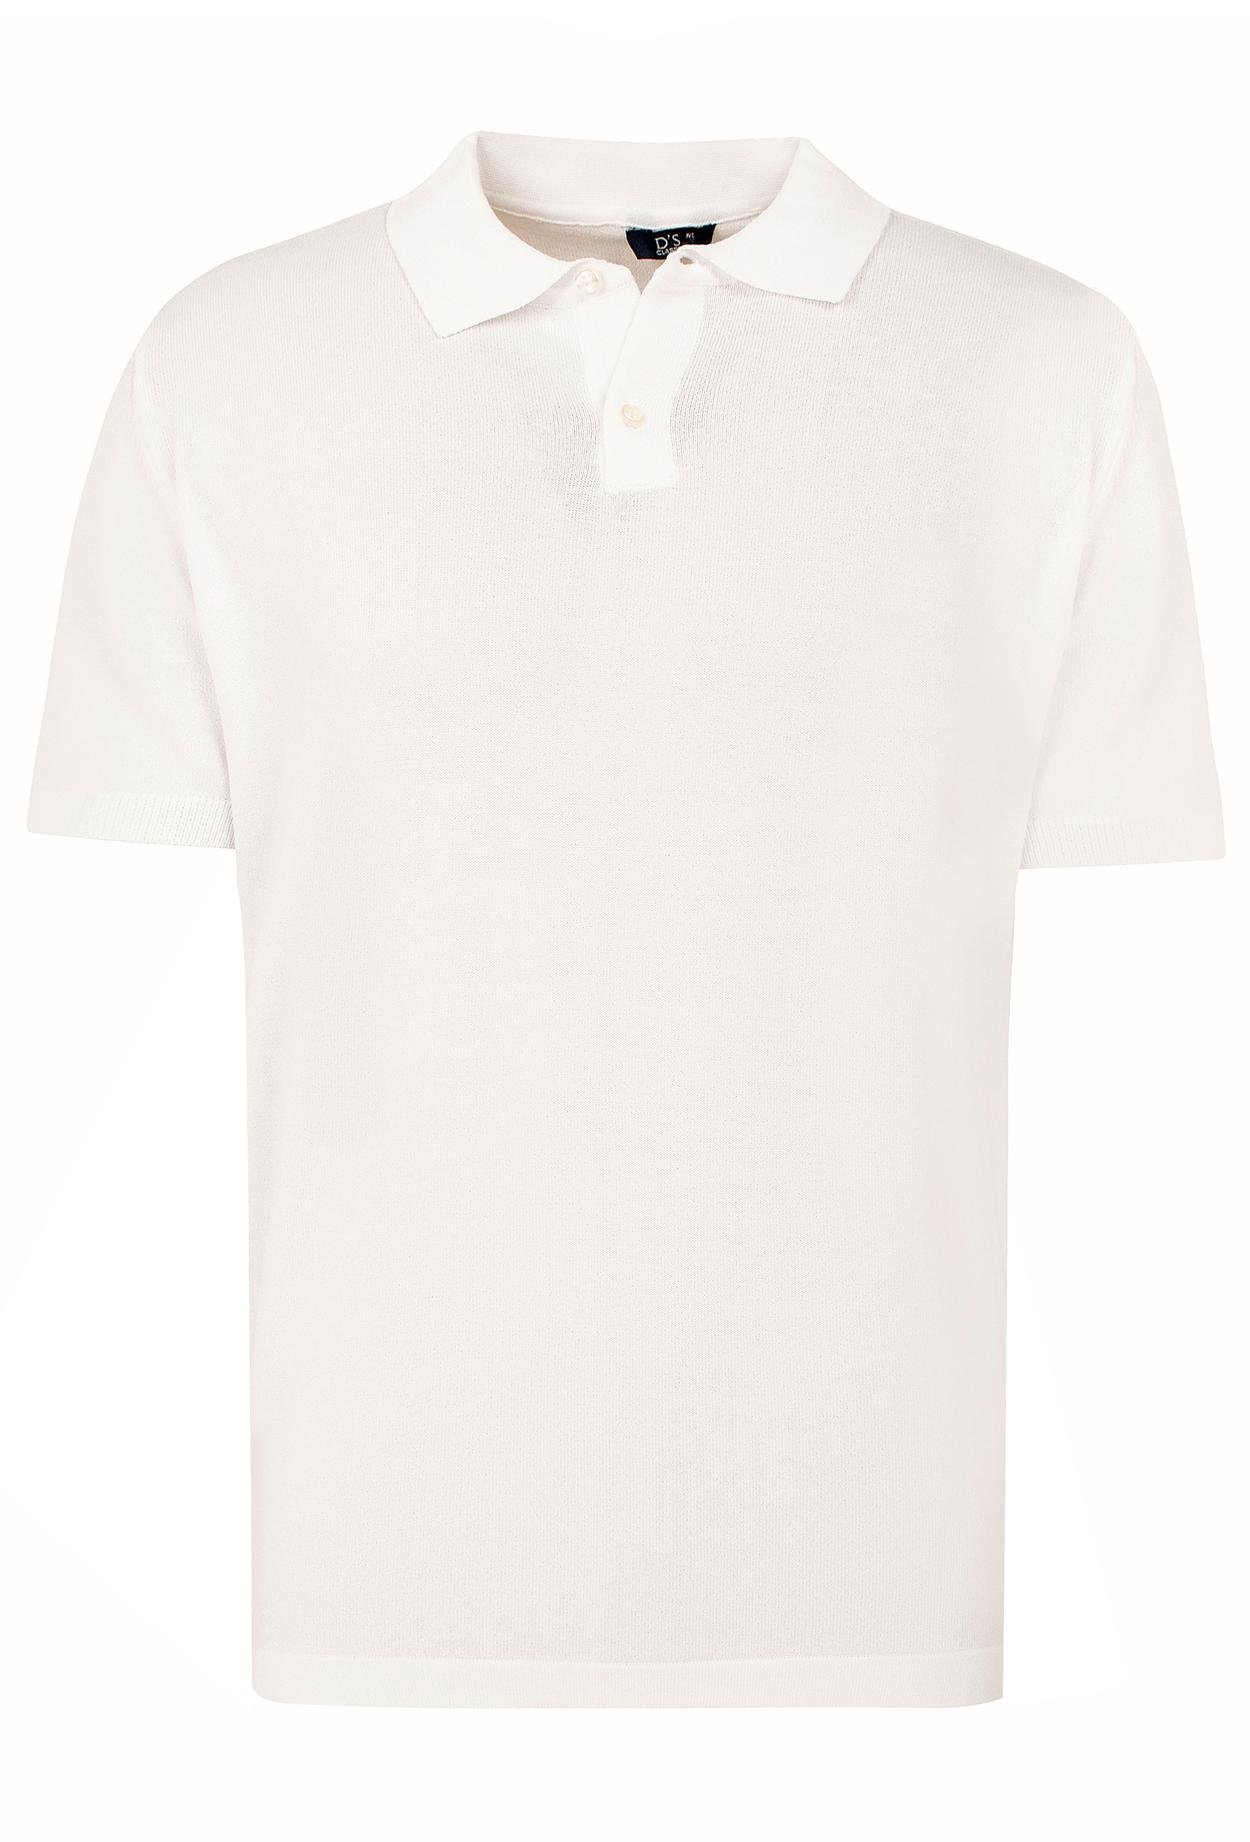 Ds Damat Slim Fit Beyaz Düz Örgü Rayon T-Shirt